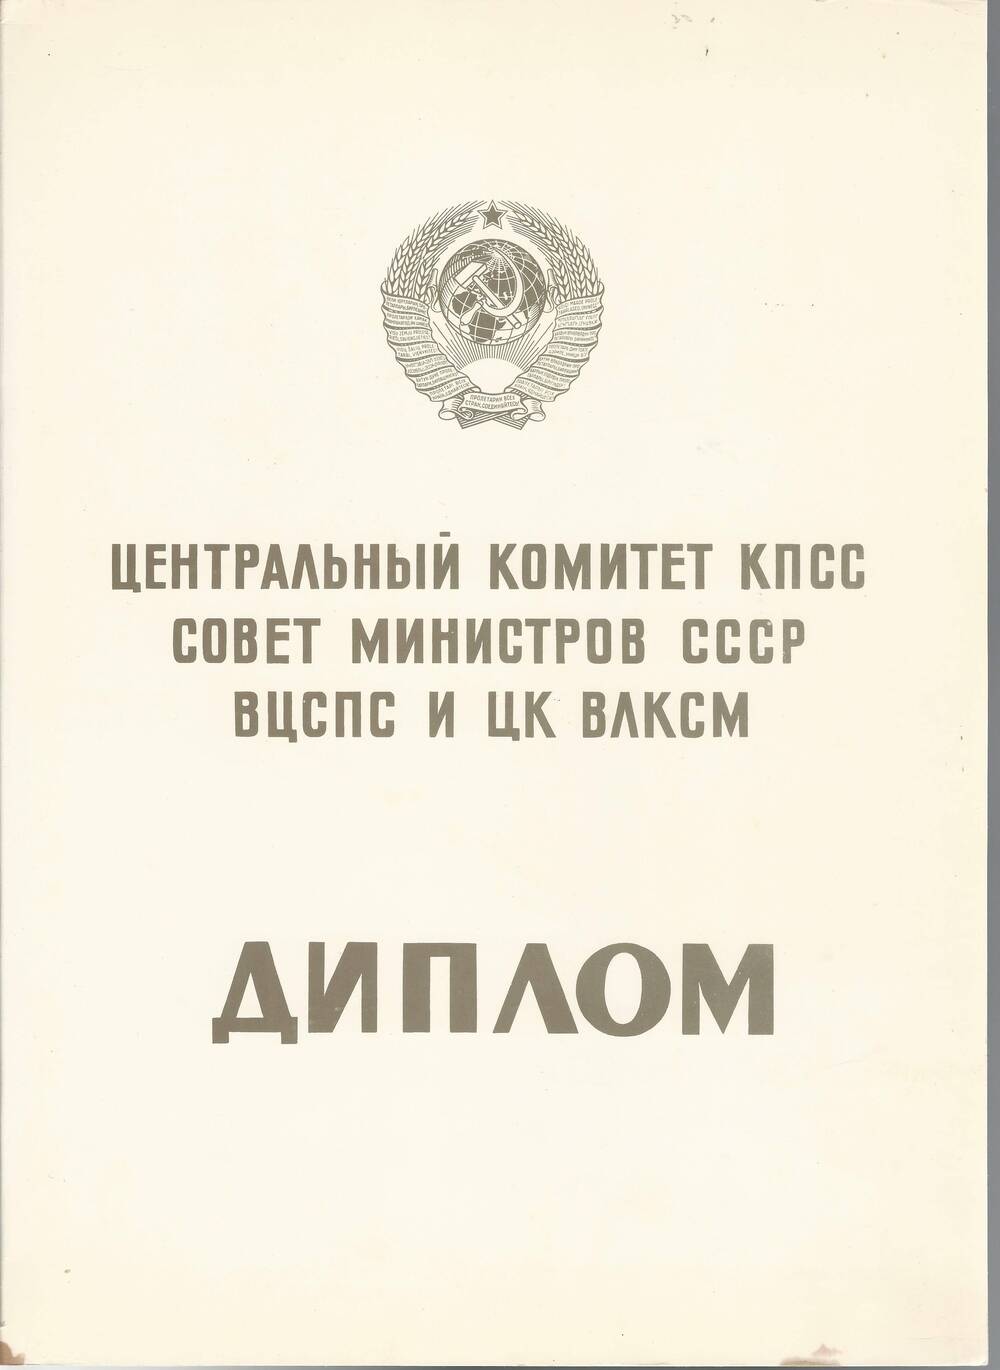 Переходящее красное знамя  совета министров СССР, диплом